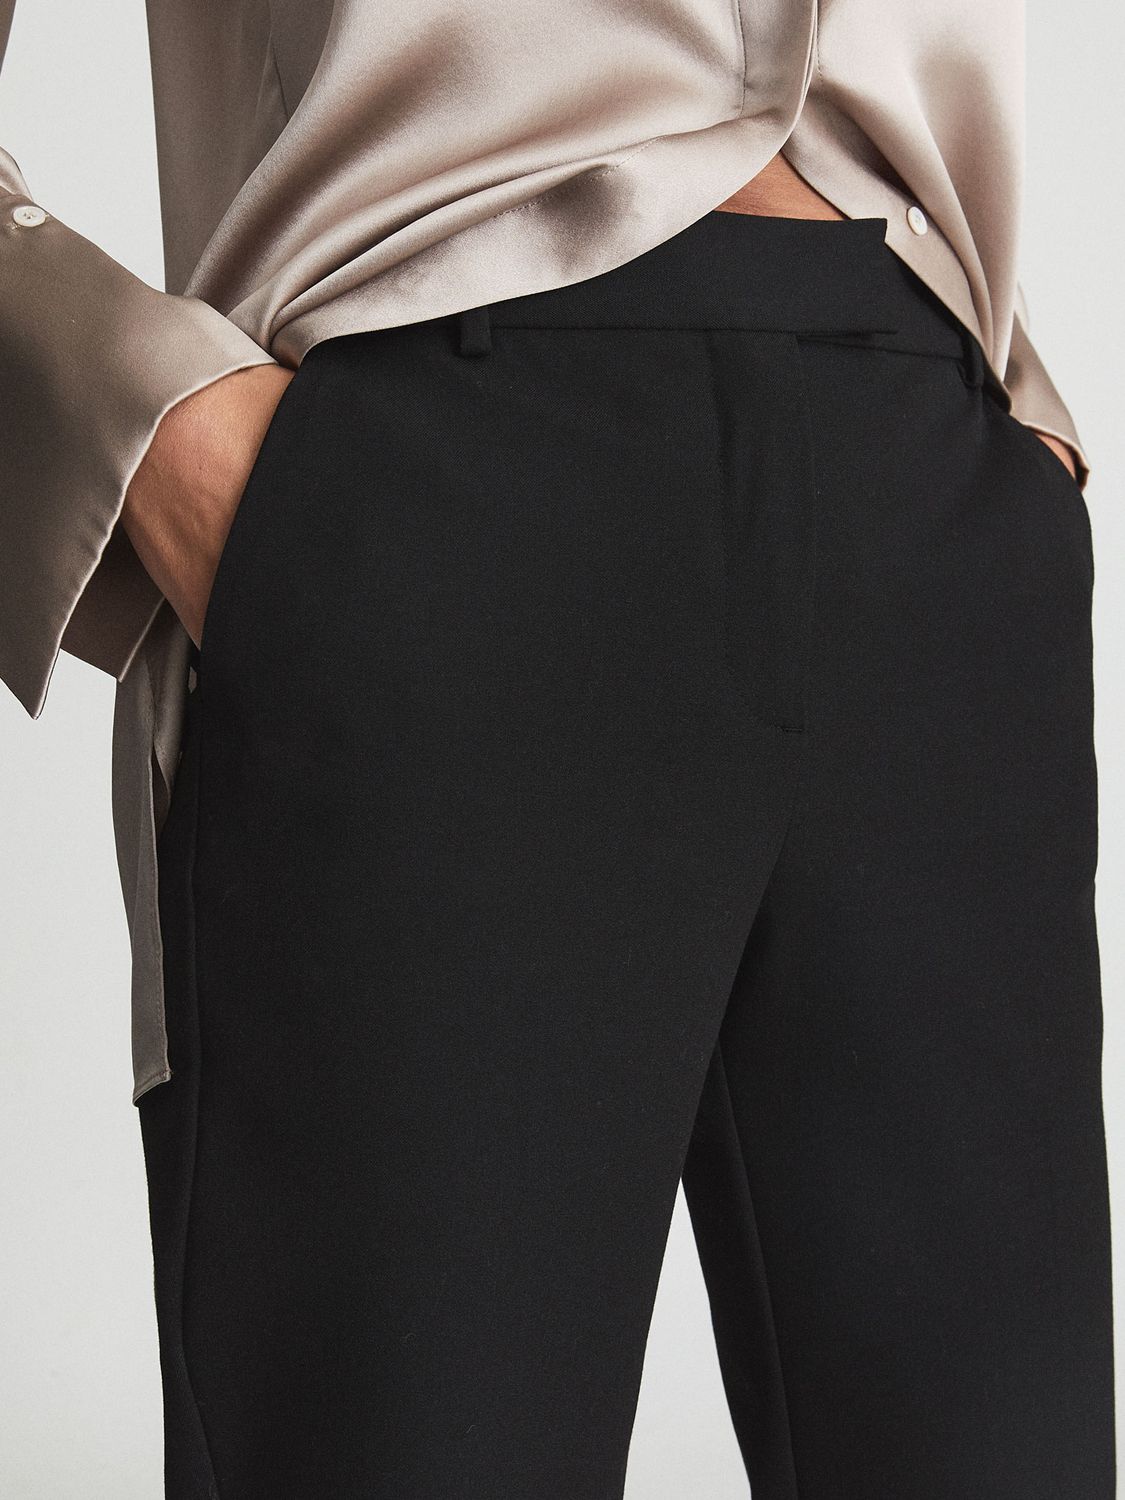 Buy Reiss Joanne Slim Leg Trousers Petite Online at johnlewis.com